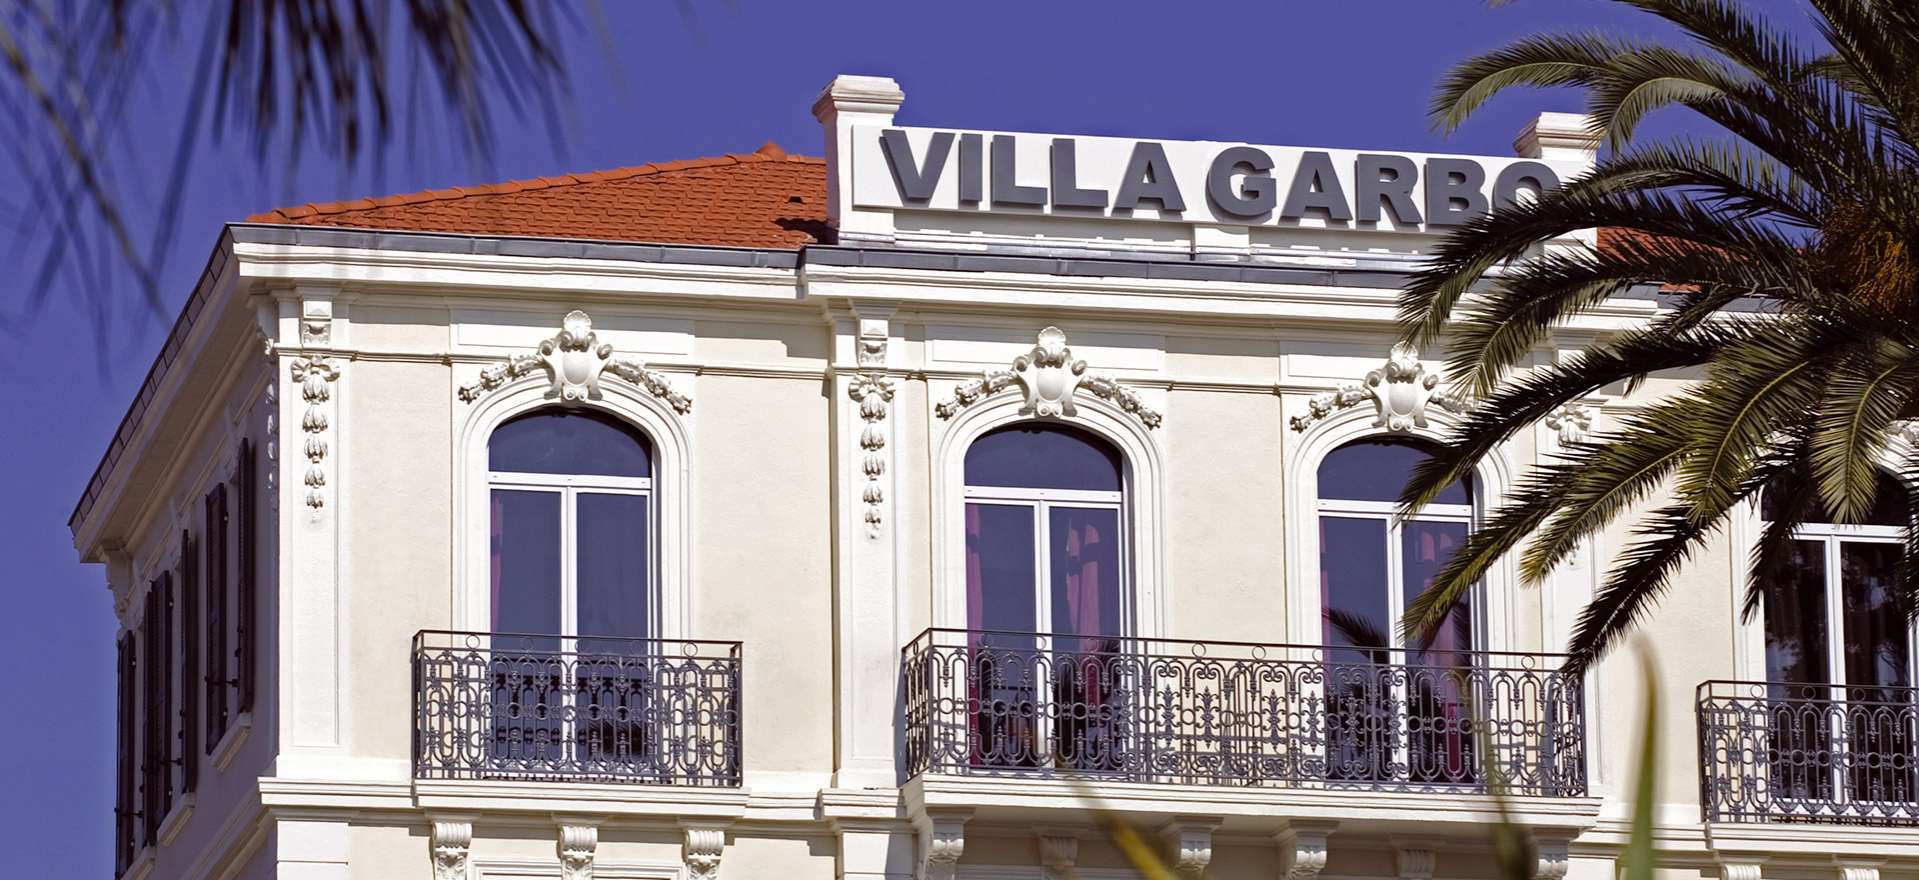 Voir la page de l'établissement "Villa Garbo"